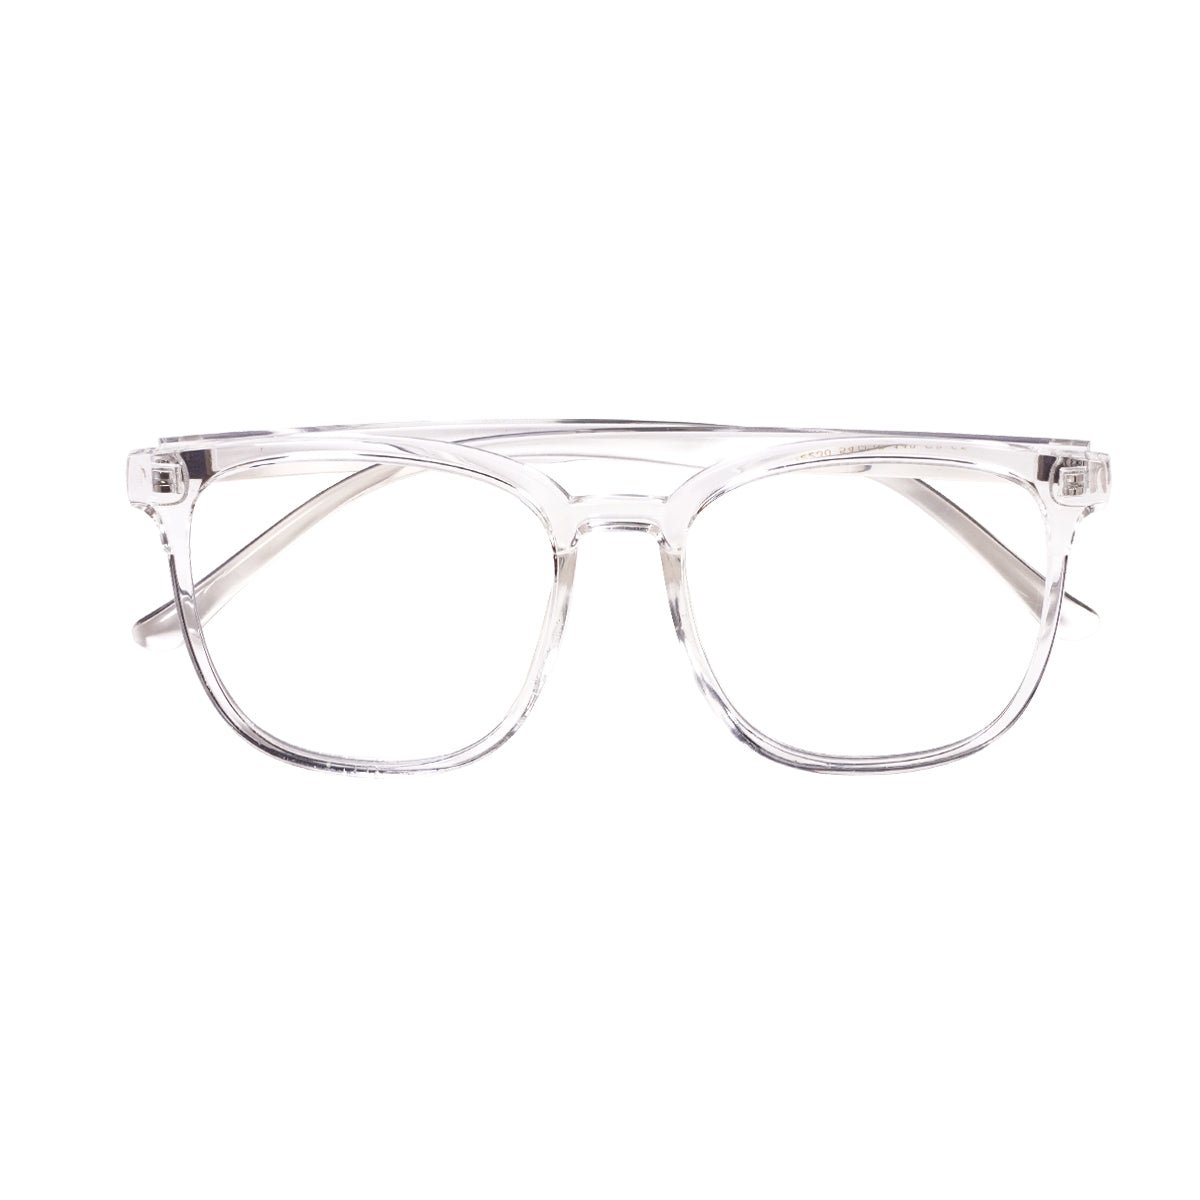 Epic Gamers Glasses V1 - Transparent White - Store 974 | ستور ٩٧٤